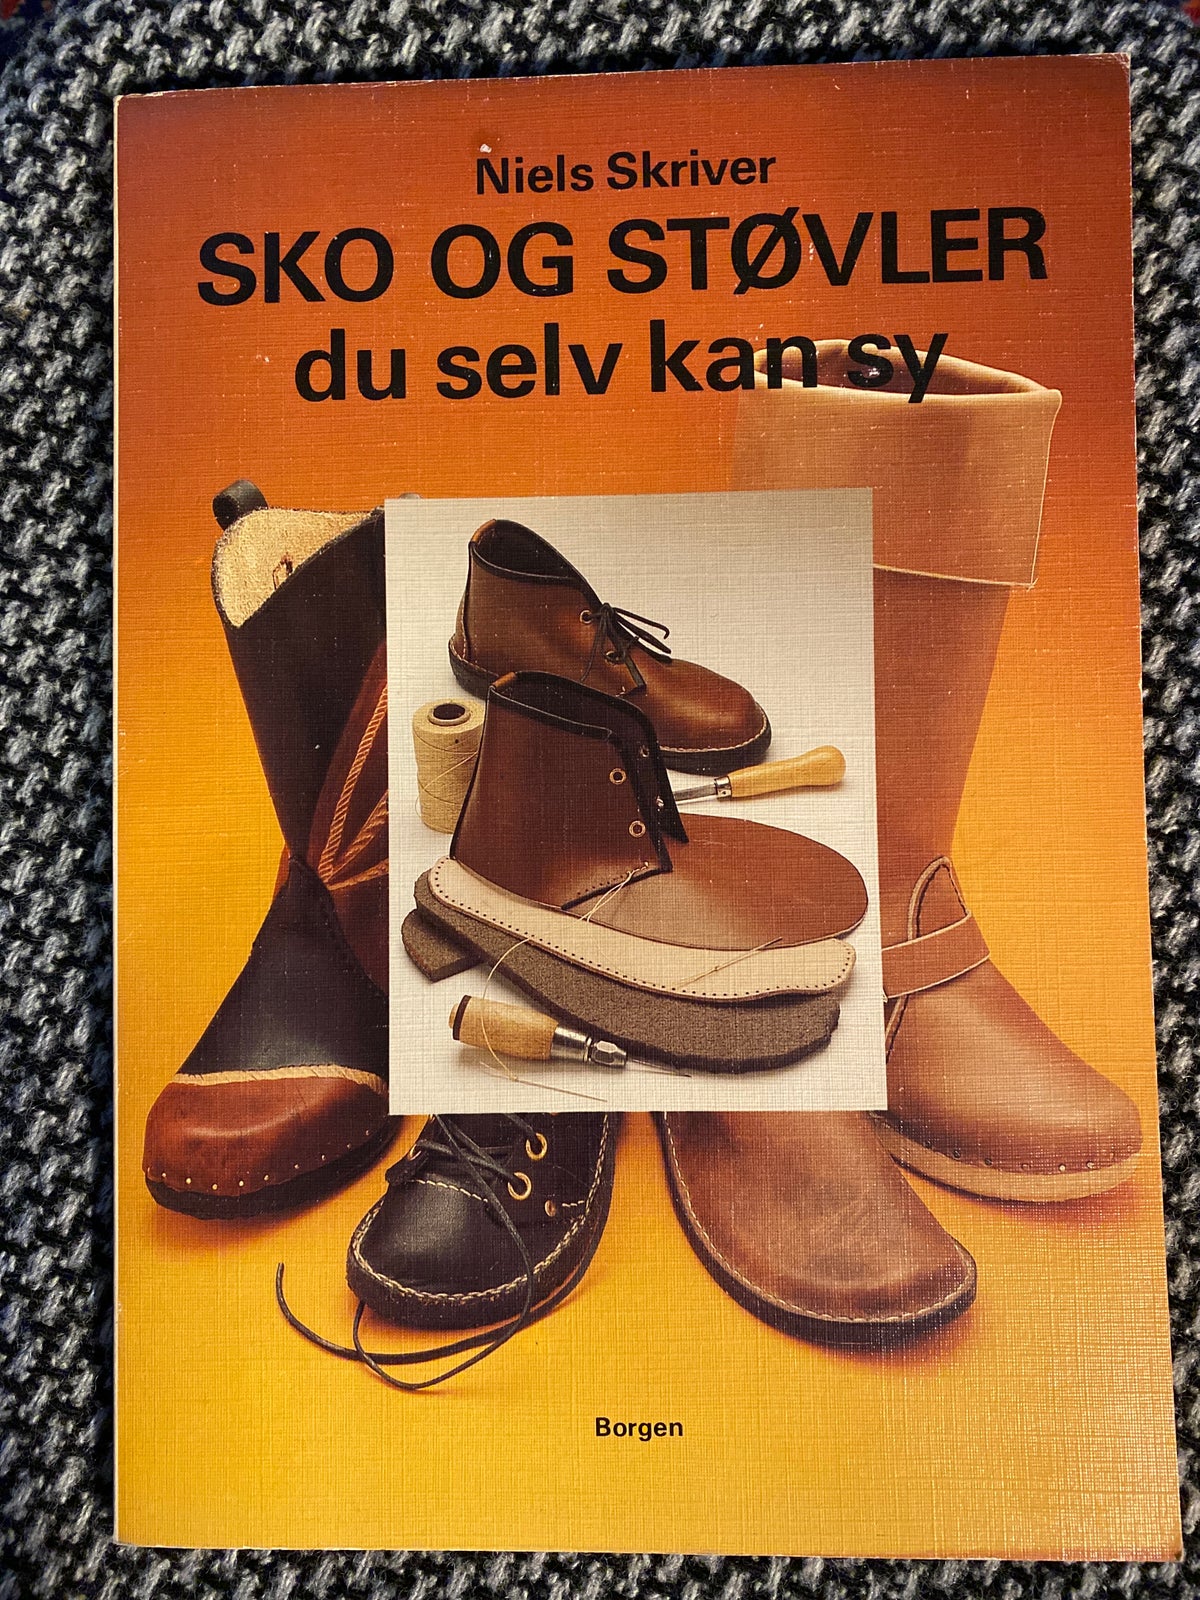 Sko og du selv sy, Niels Skriver, håndarbejde – dba.dk Køb og Salg af Nyt og Brugt